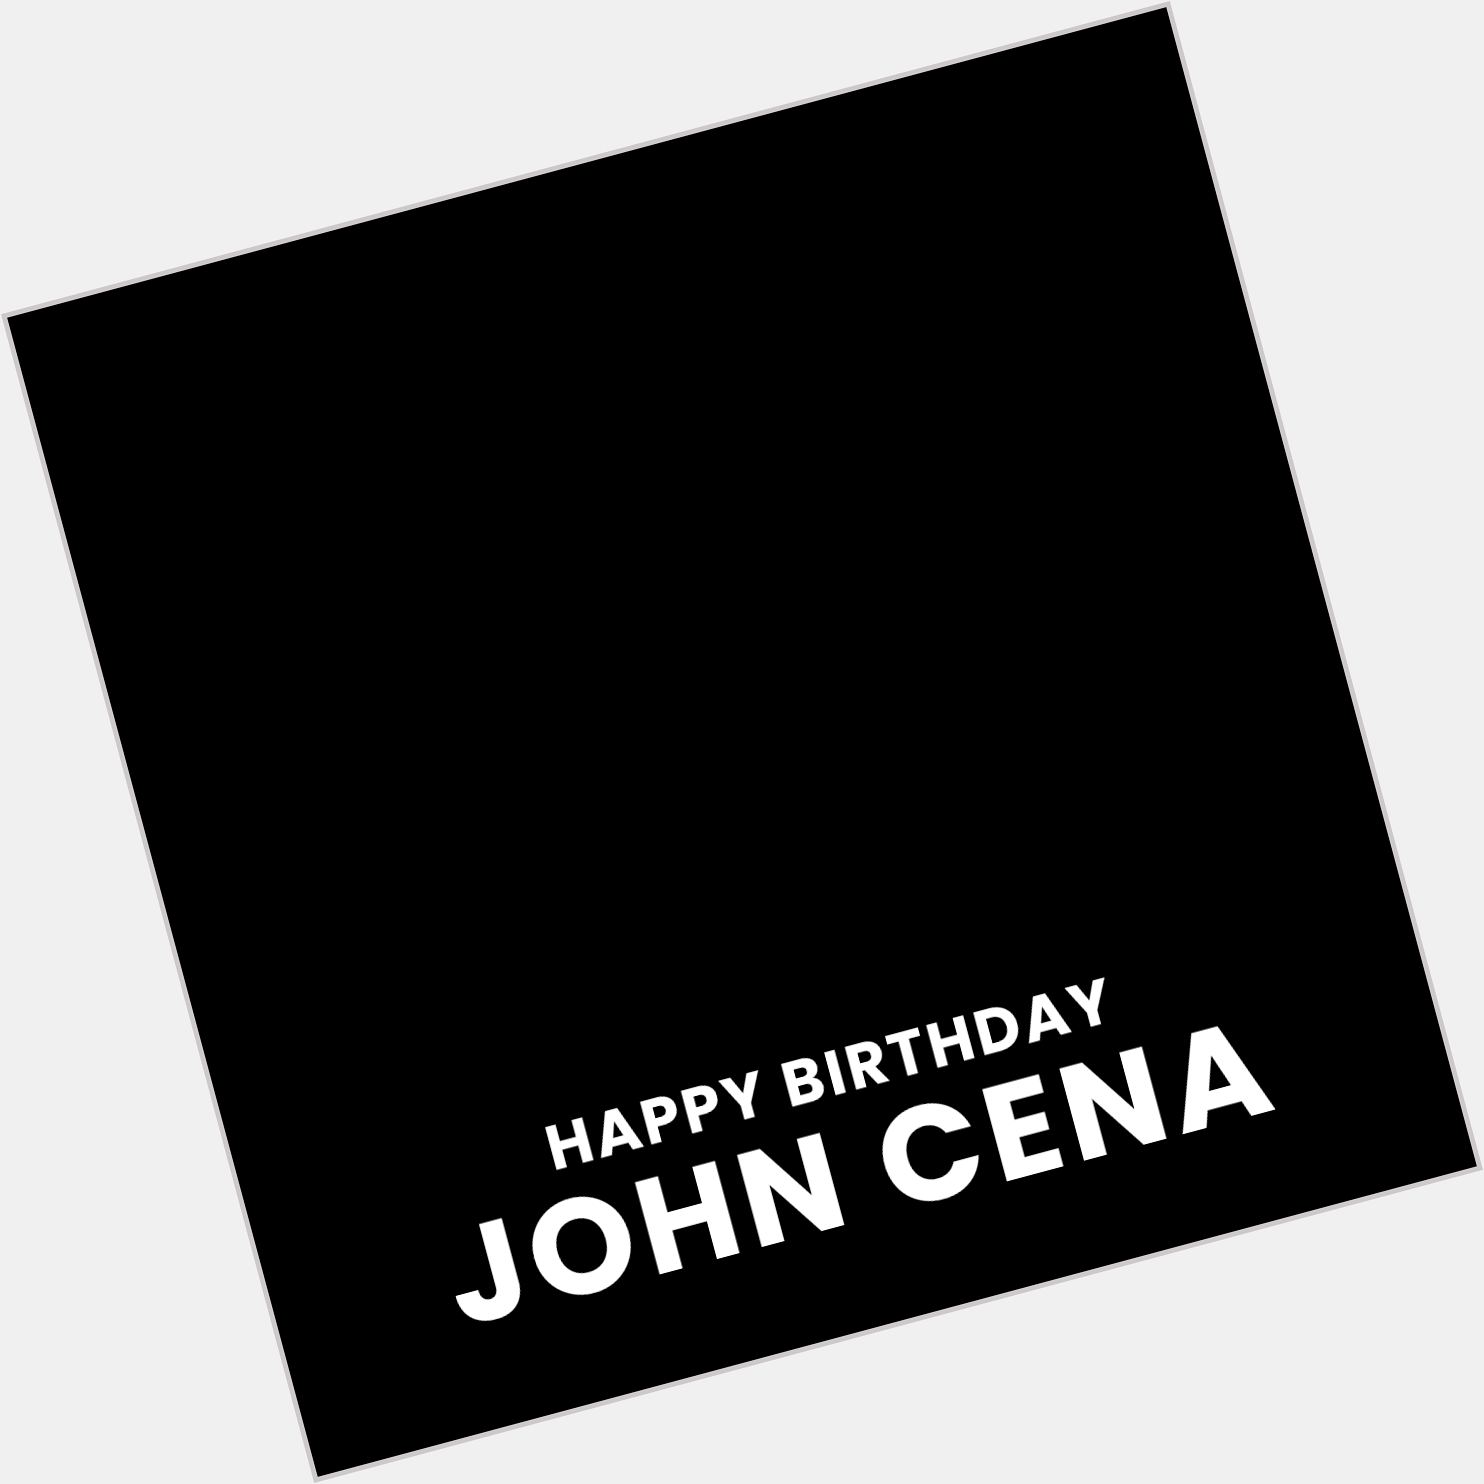 Happy Birthday John Cena! 